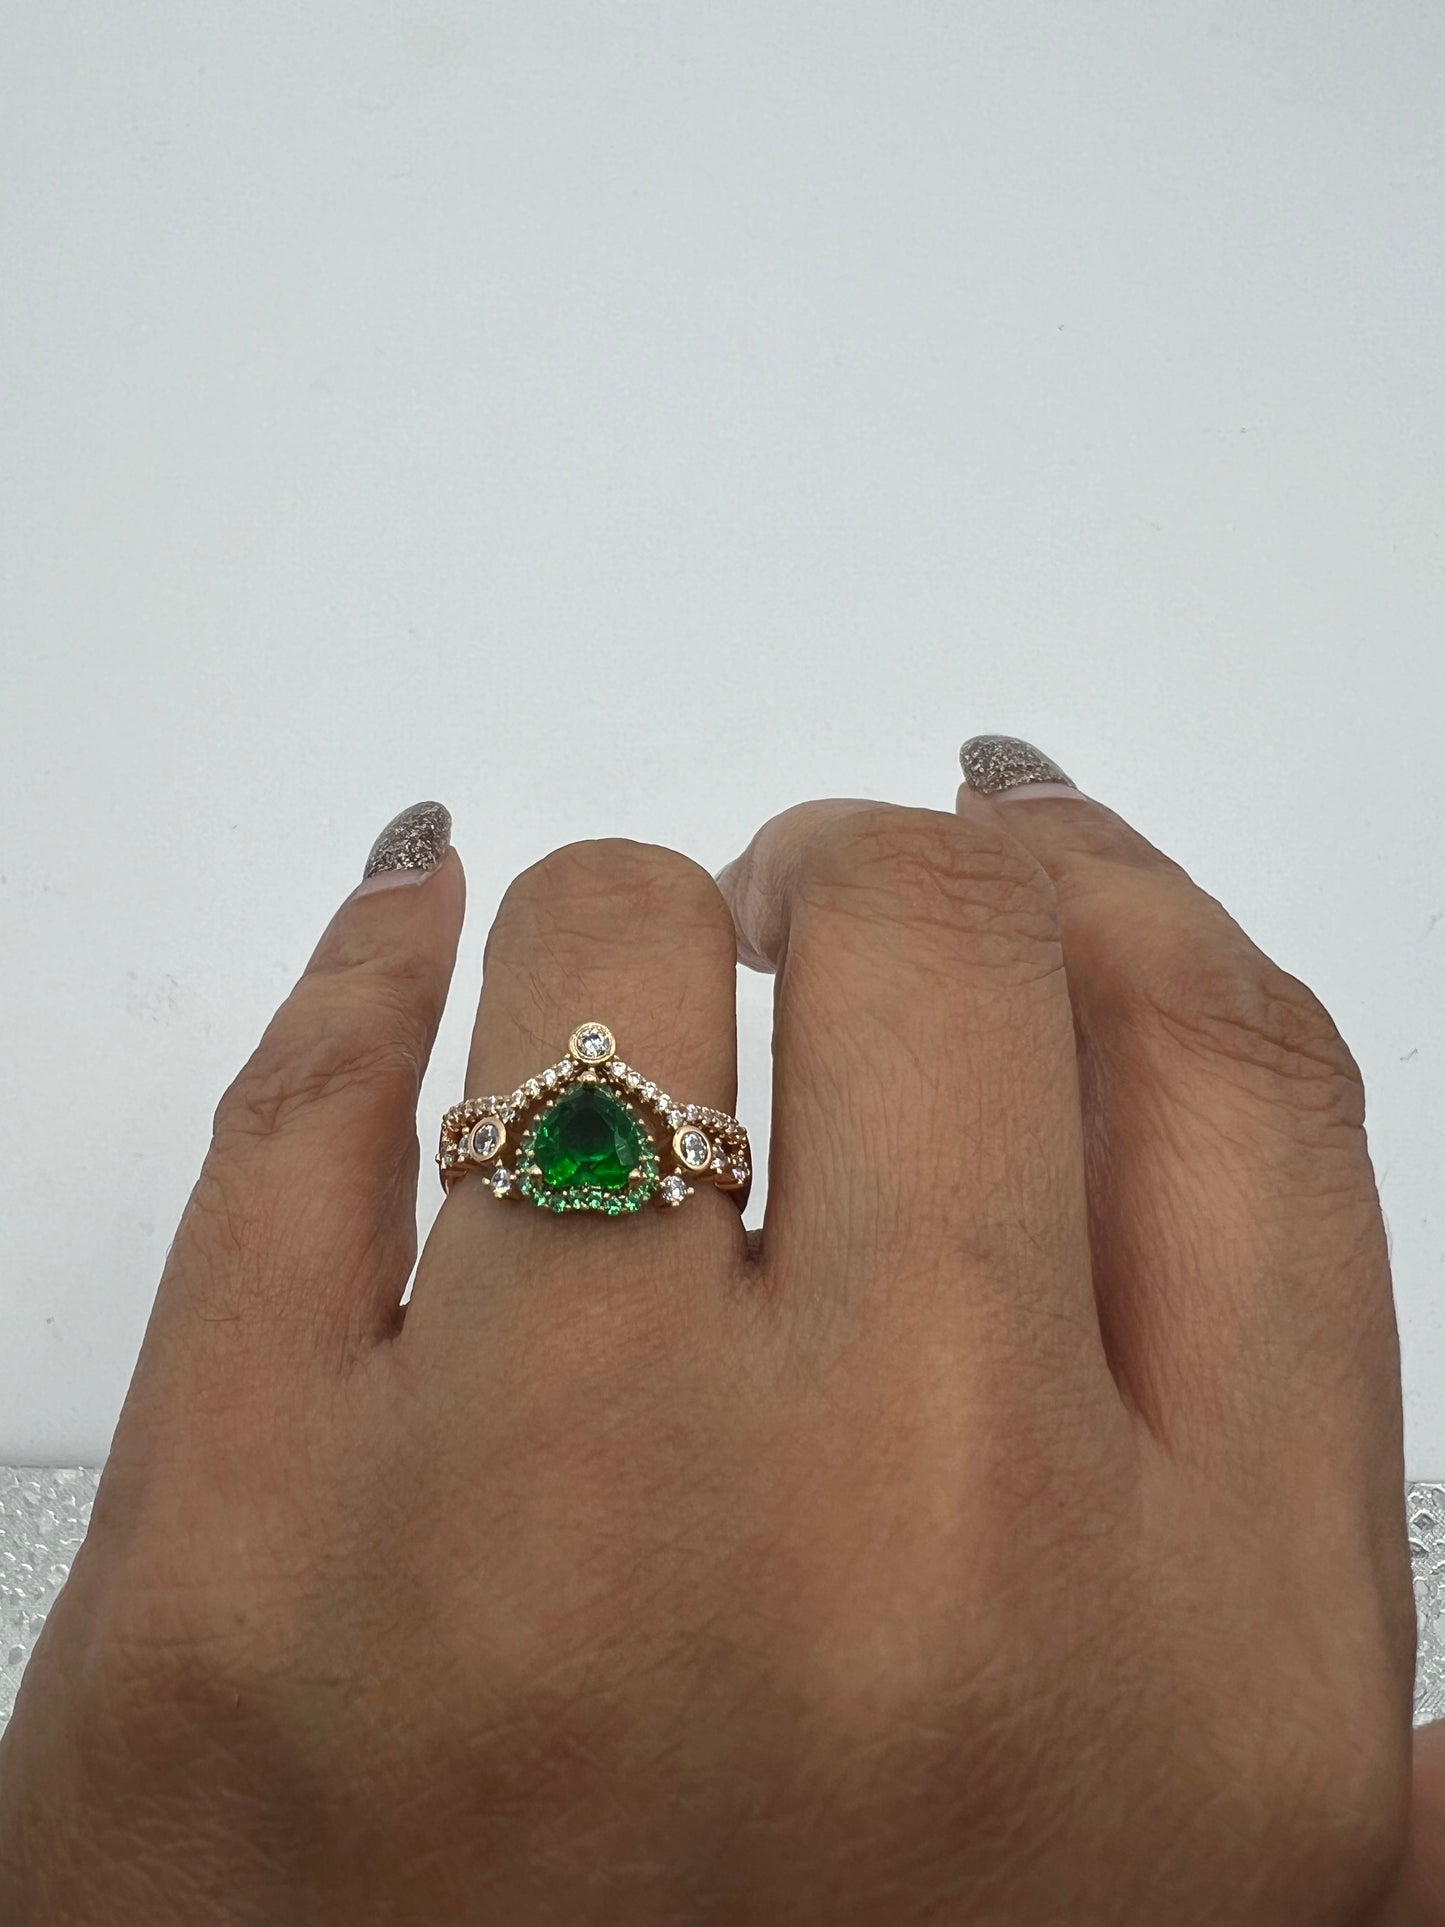 dainty green heart shape rings